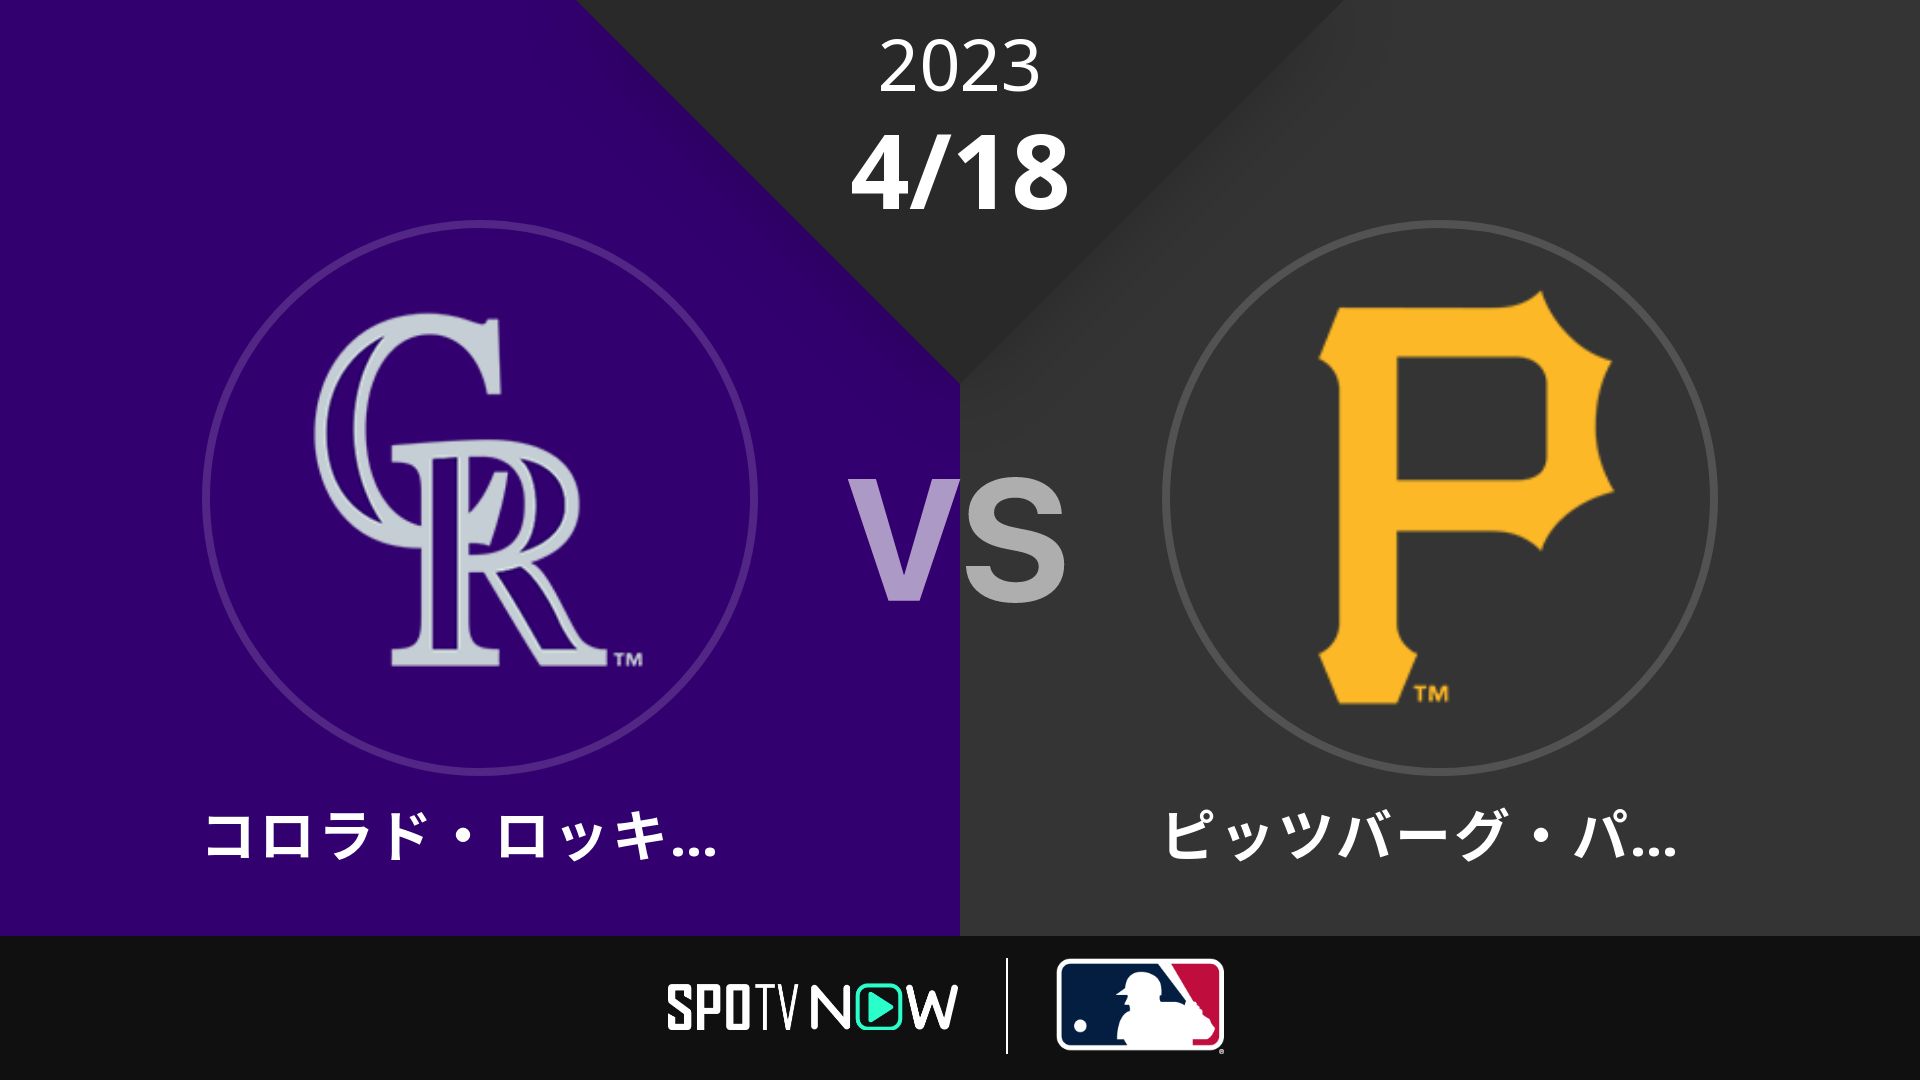 2023/4/18 ロッキーズ vs パイレーツ [MLB]